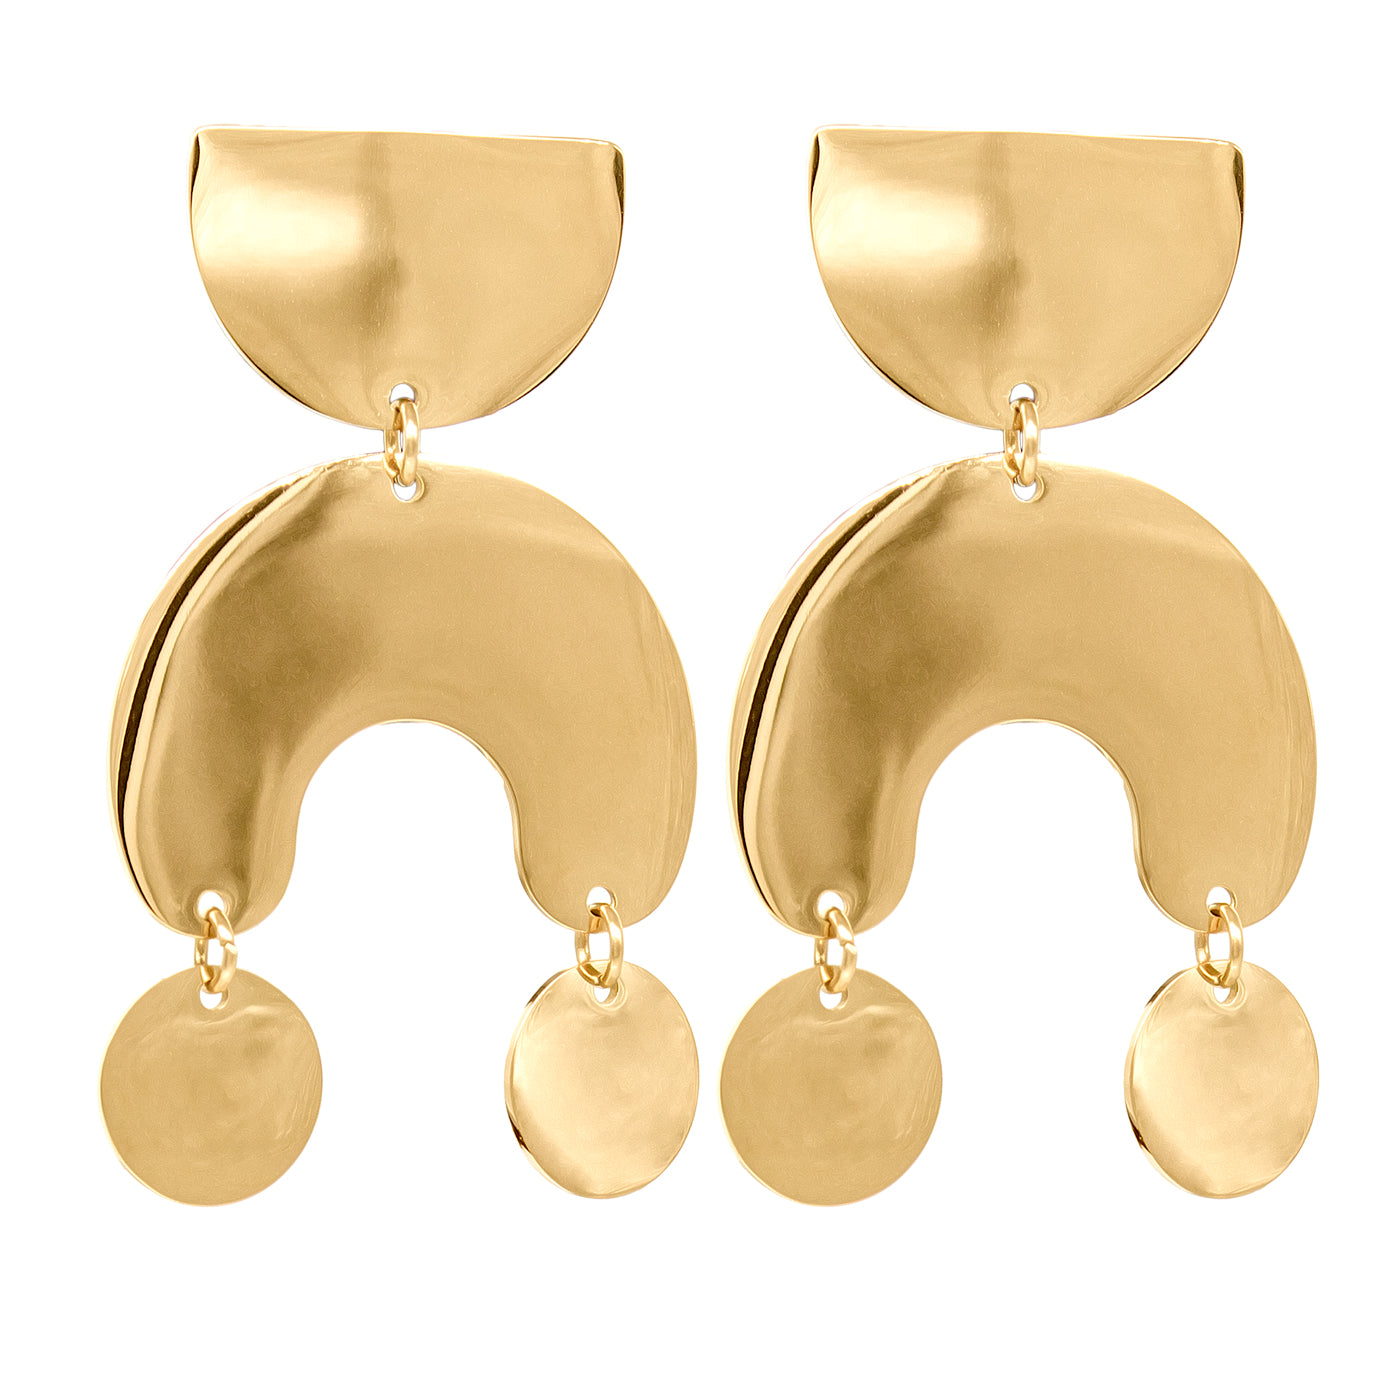 Leonora earrings